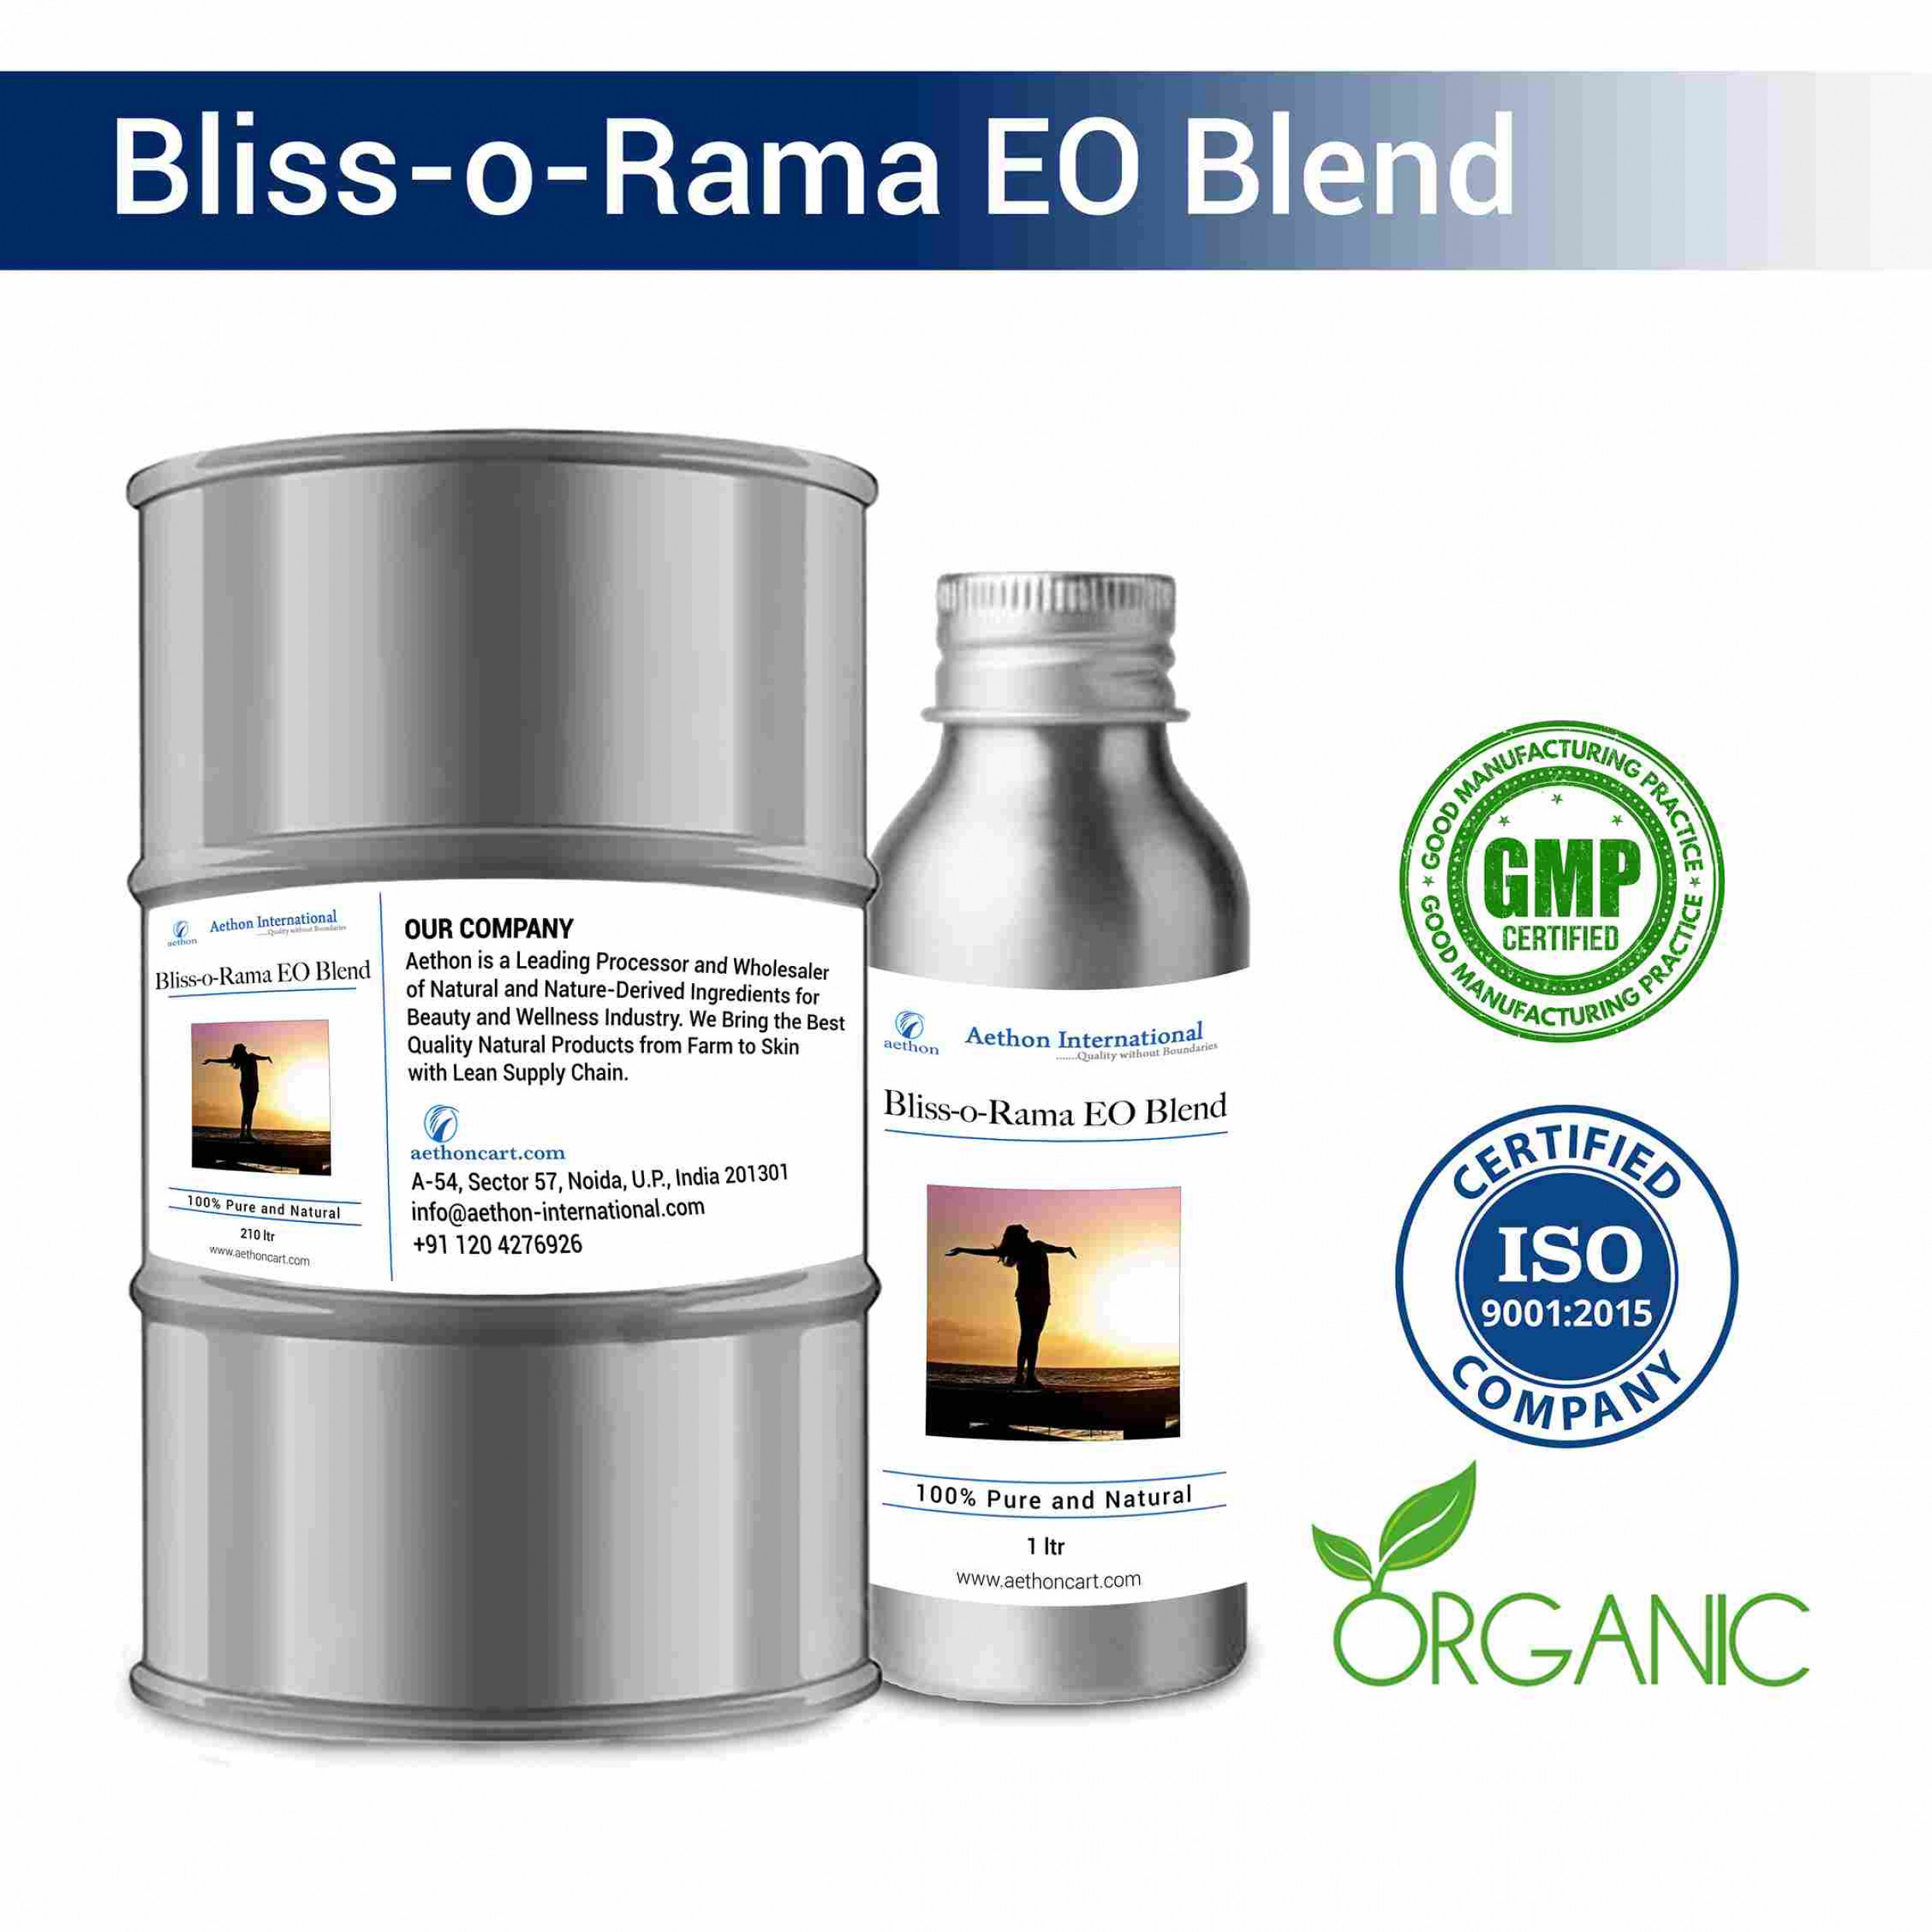 Bliss-O-Rama EO Blend